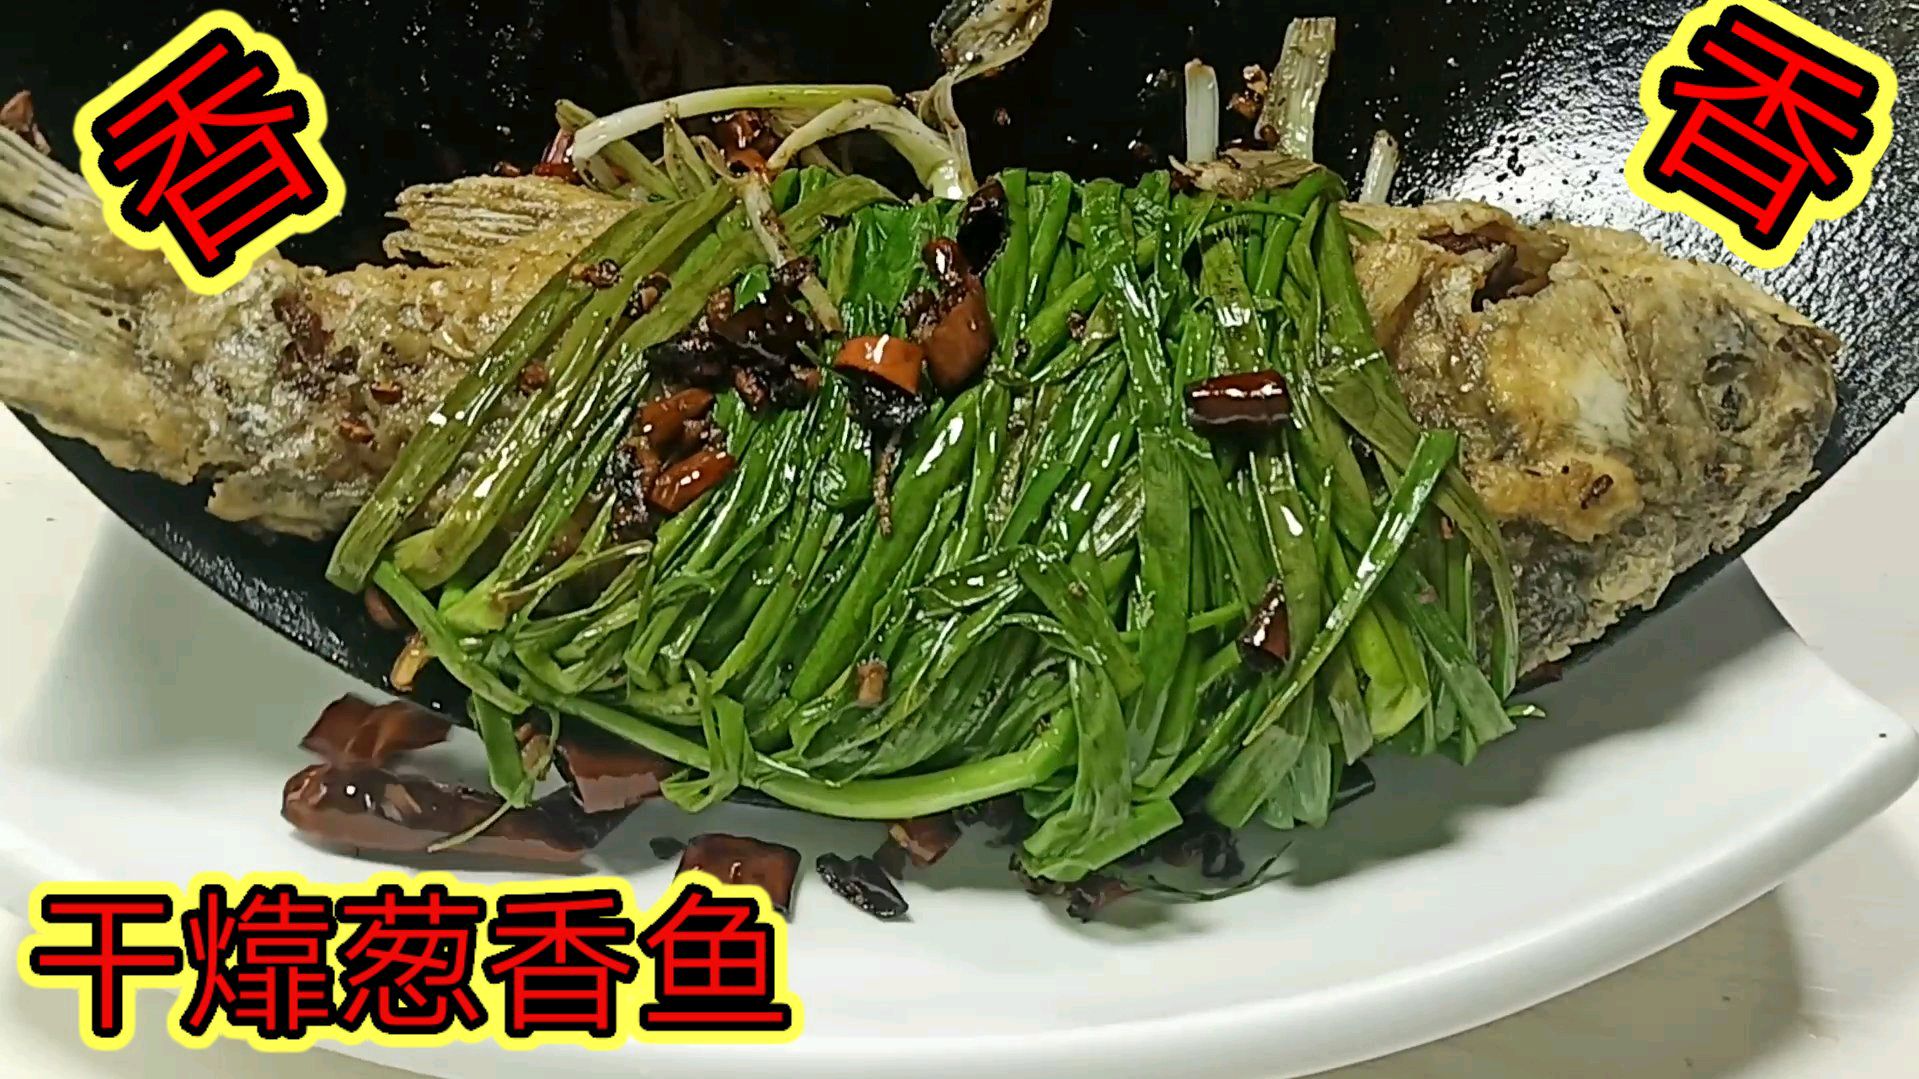 01:38 来源:好看视频-冬天的首选菜,超爽的火锅底料,麻辣鱼的超级